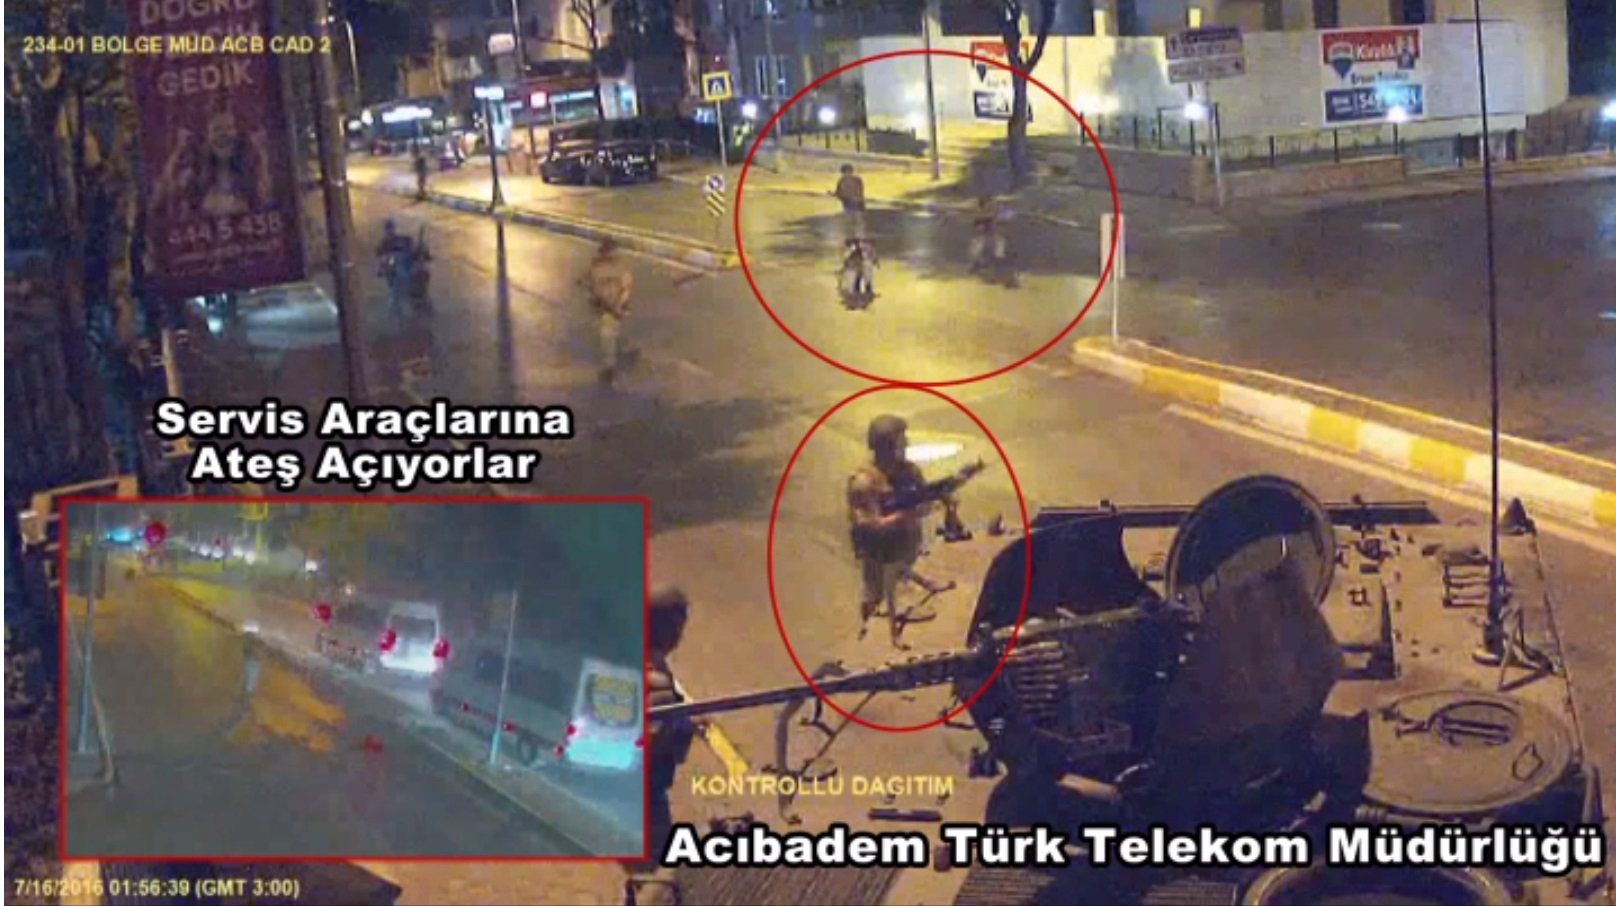 Kadıköy Acıbadem'deki Türk Telekom Müdürlüğü'ne girmeye çalışan darbeci askerler yoldan geçen servis araçlarına ateş açtı.